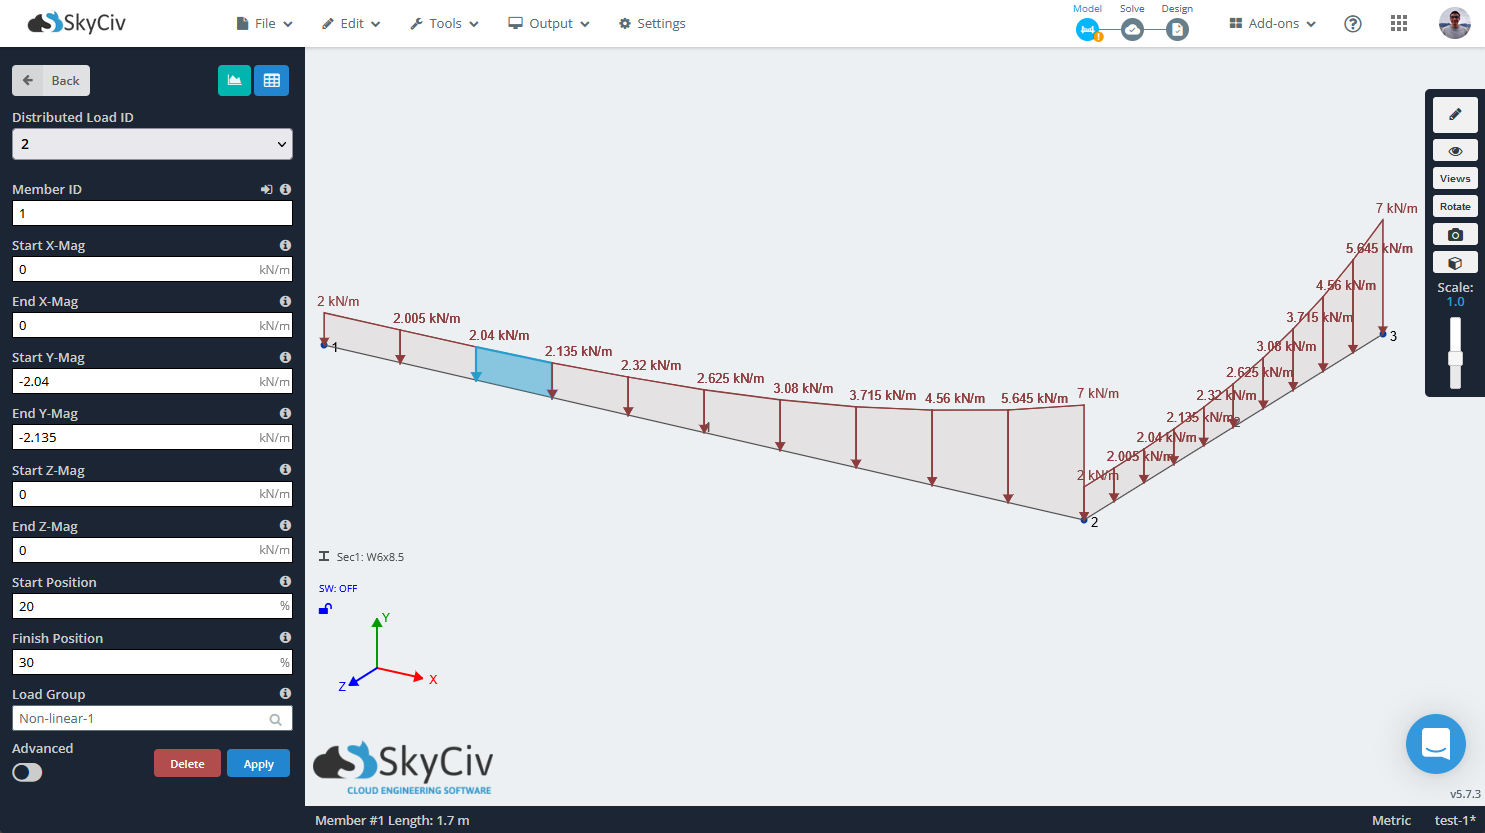 SkyCiv S3D que muestra una carga distribuida no lineal o definida por ecuación